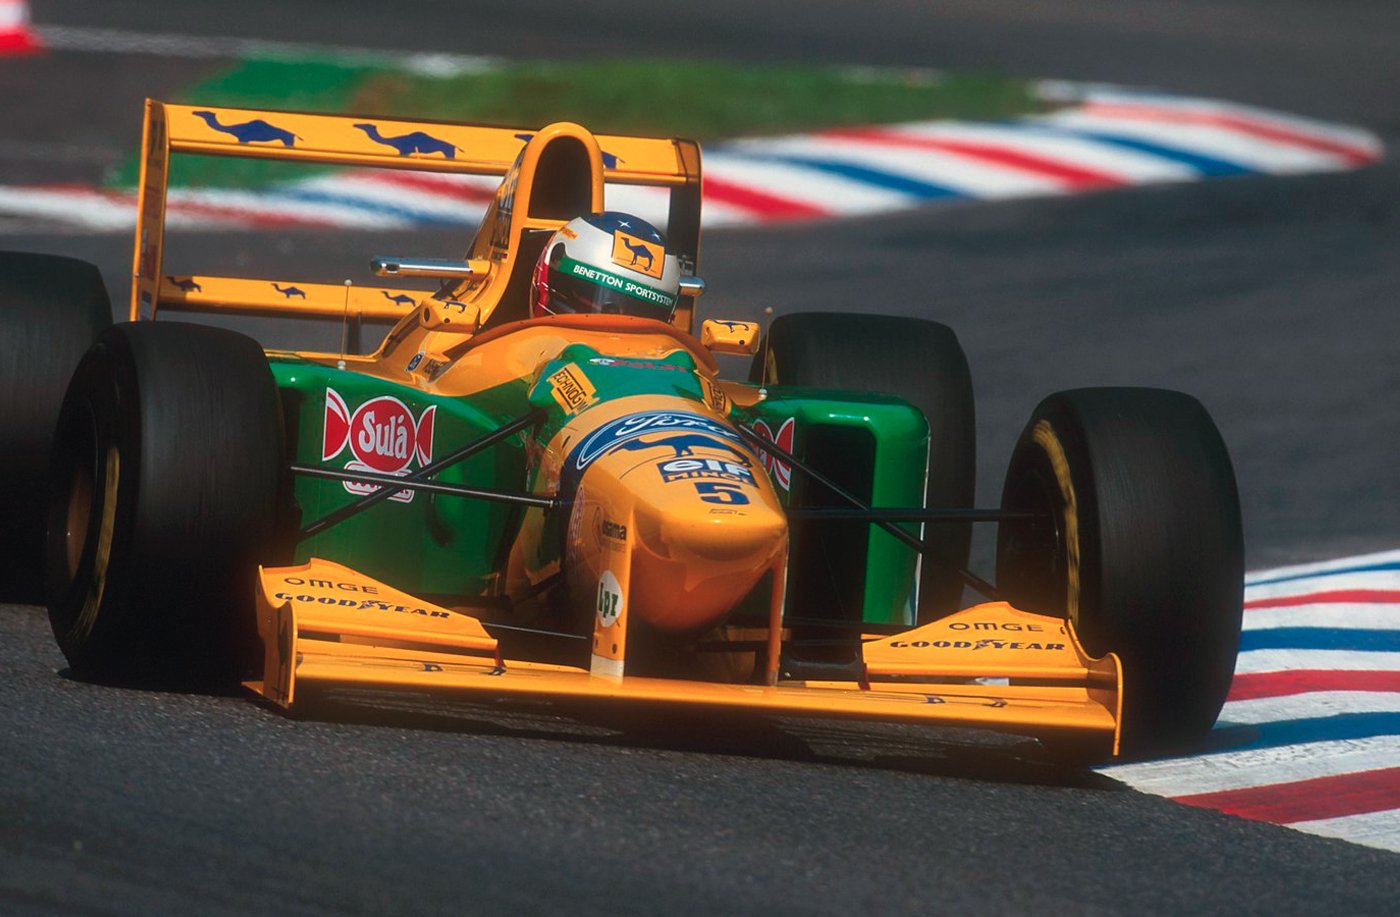 Minichamps 1:18 Schumacher 1993 Portuguese GP winning Benetton B193 diecast model car review